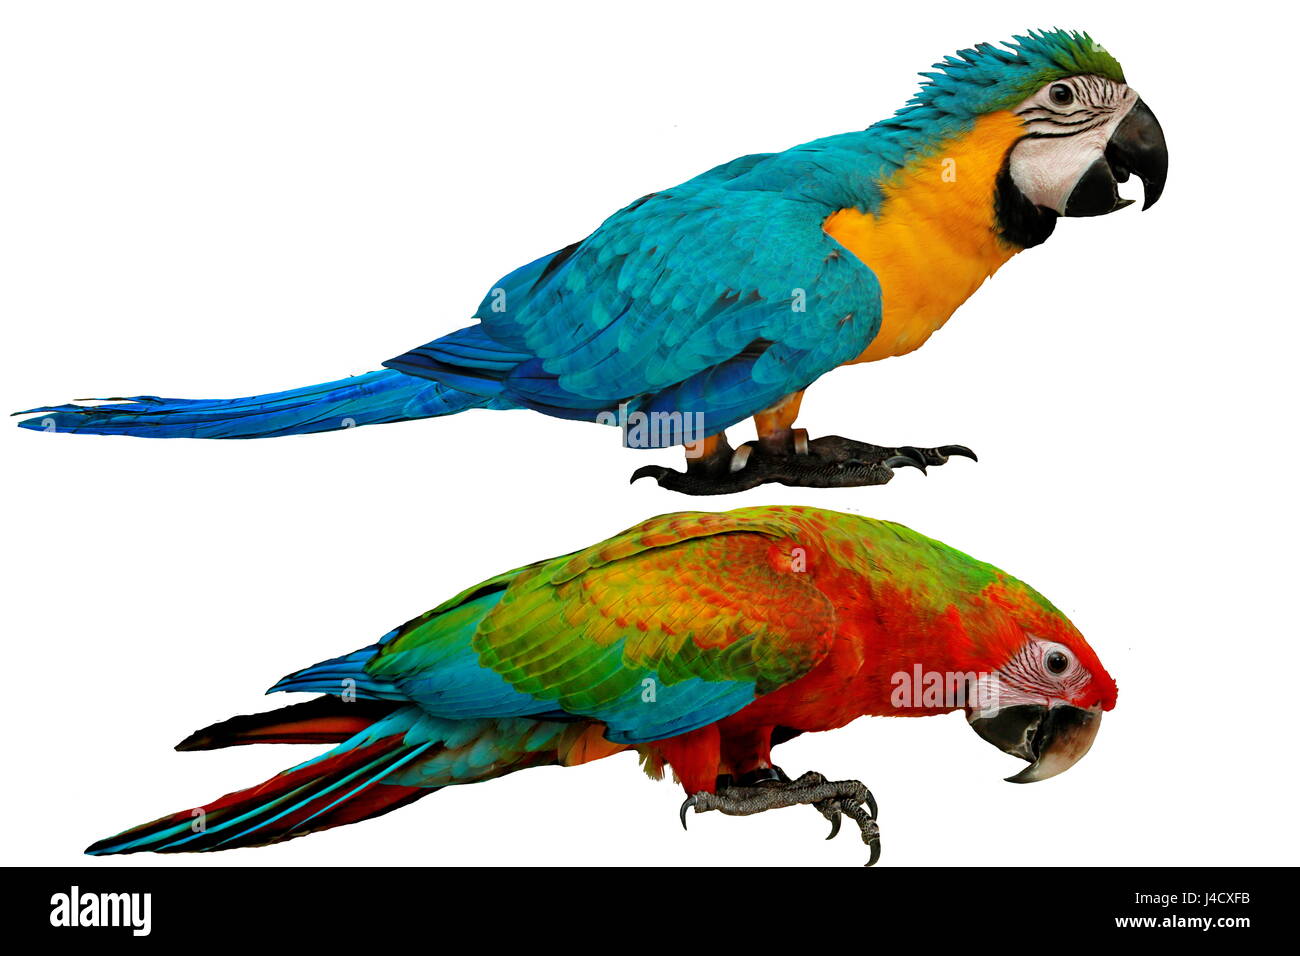 Pappagalli colorati come maschio blu e giallo macaw parrot con il rosso e il blu macaw pappagallo isolati su sfondo bianco. Foto Stock